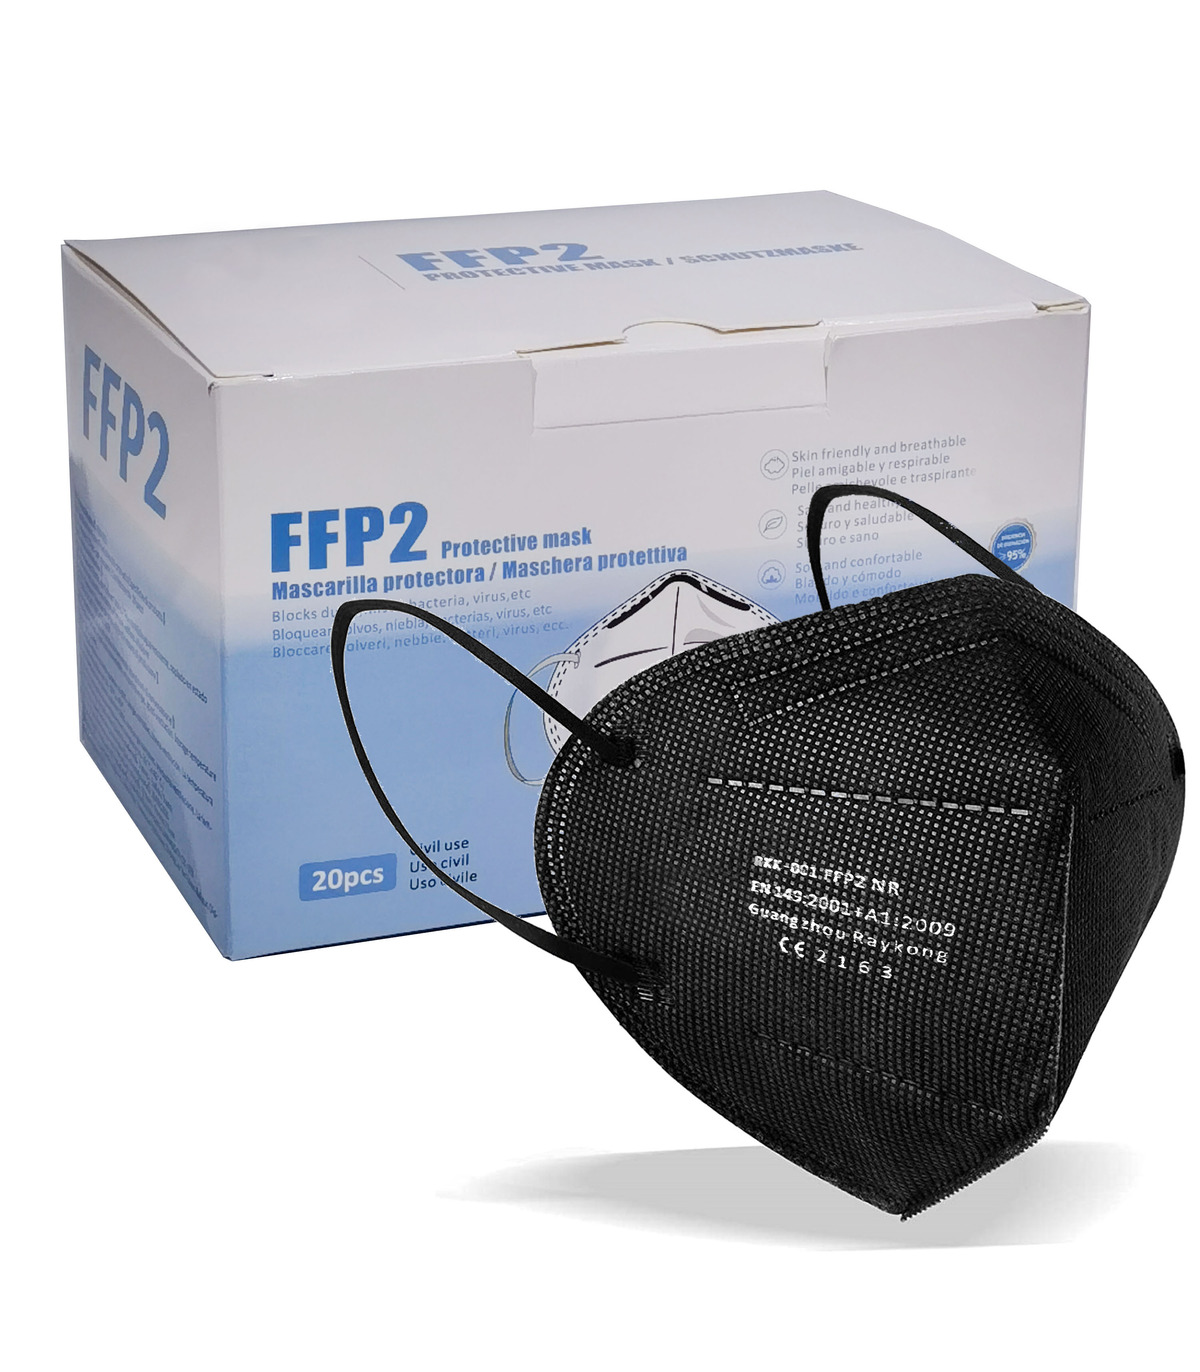 Mascarilla de protección FFP2 homologada EN-149